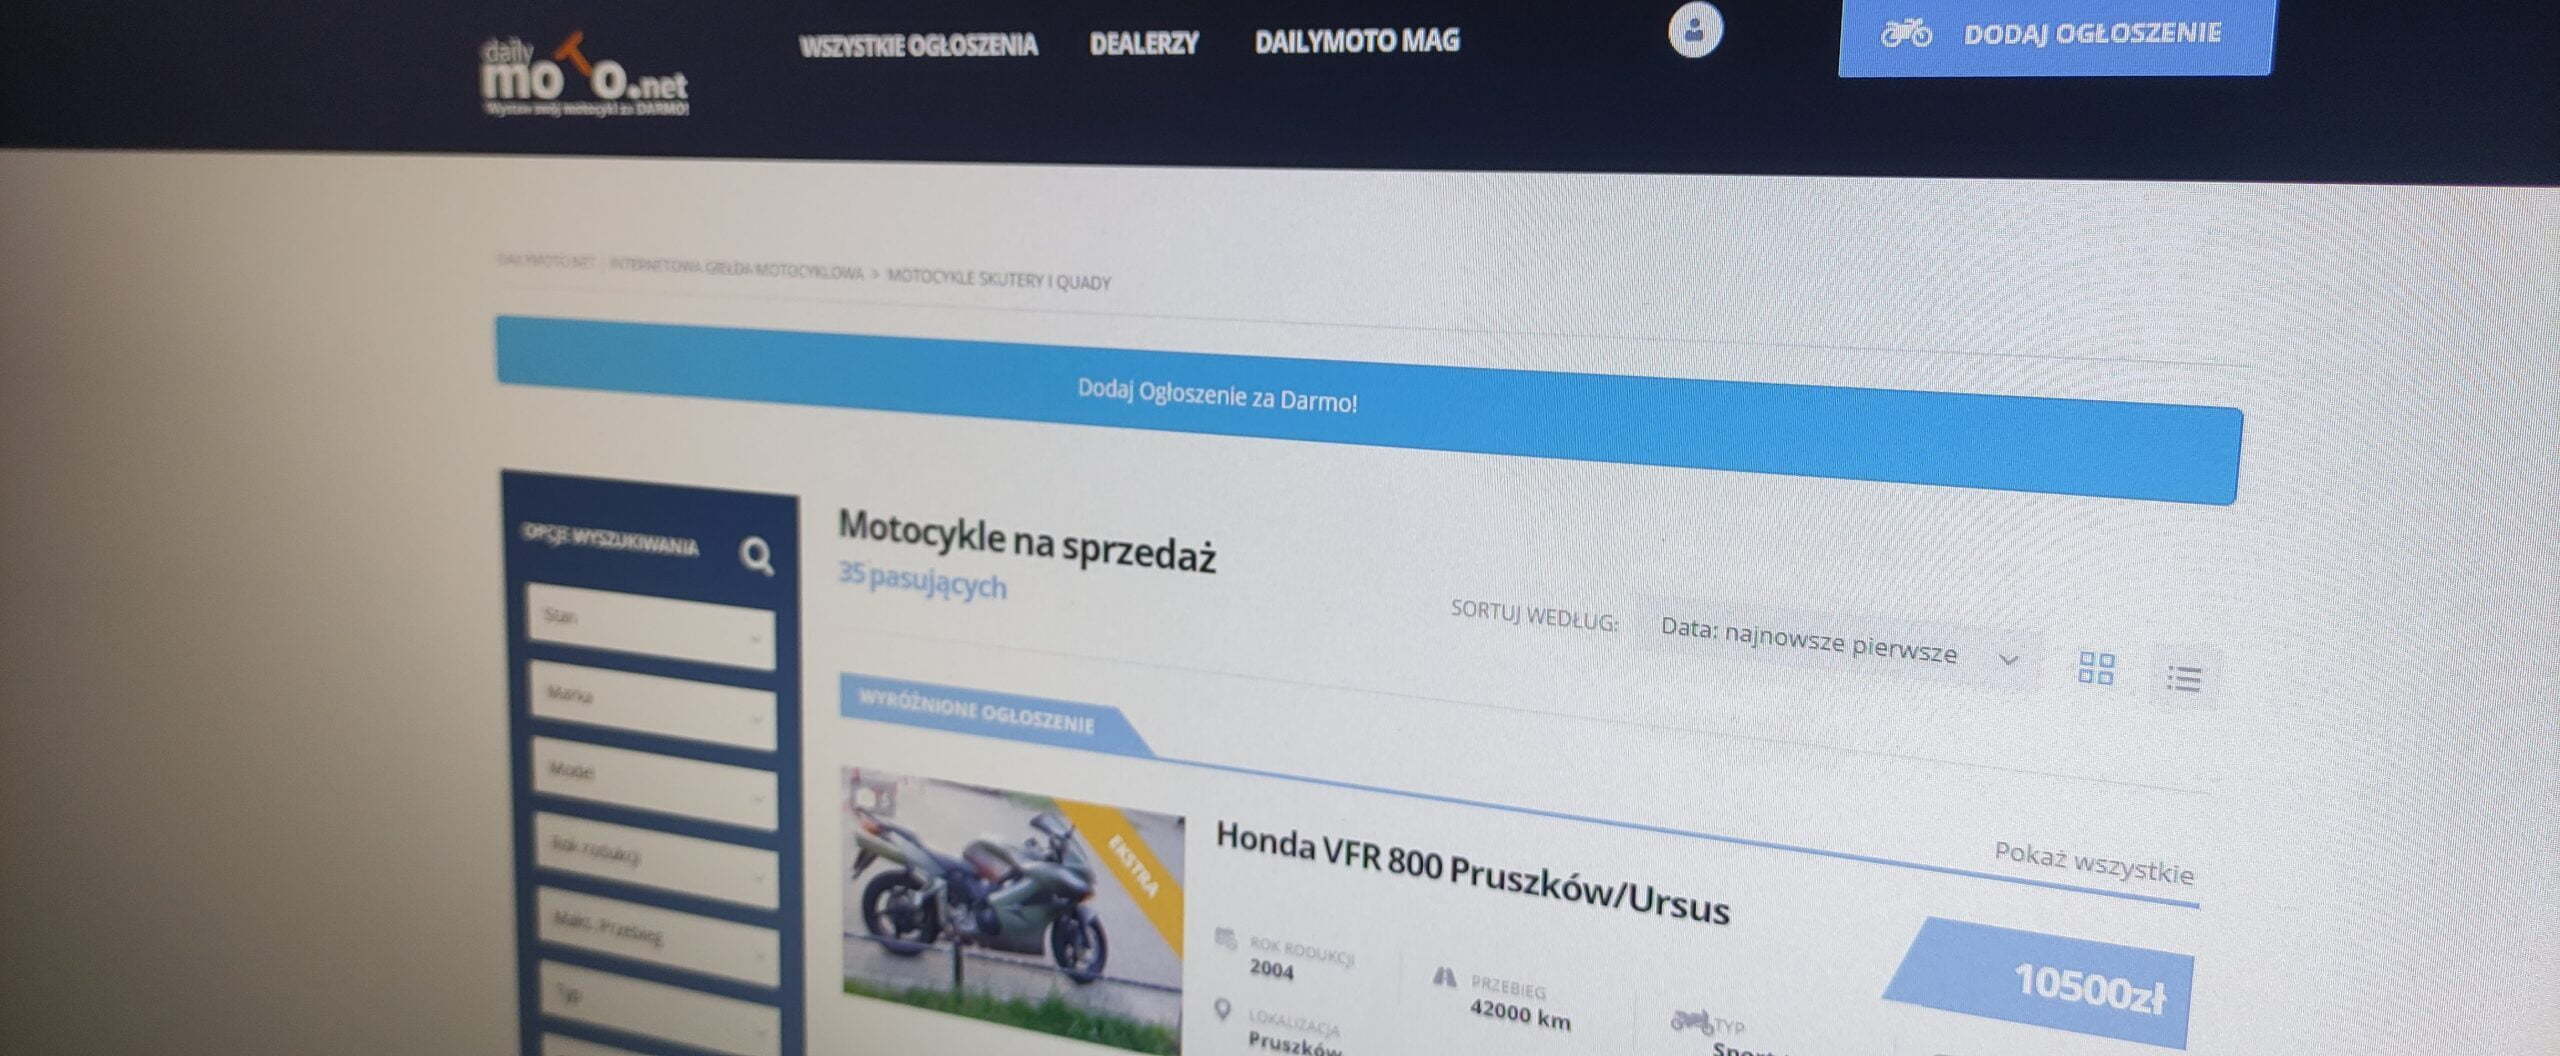 Dailymoto net, ceny motocykli używanych